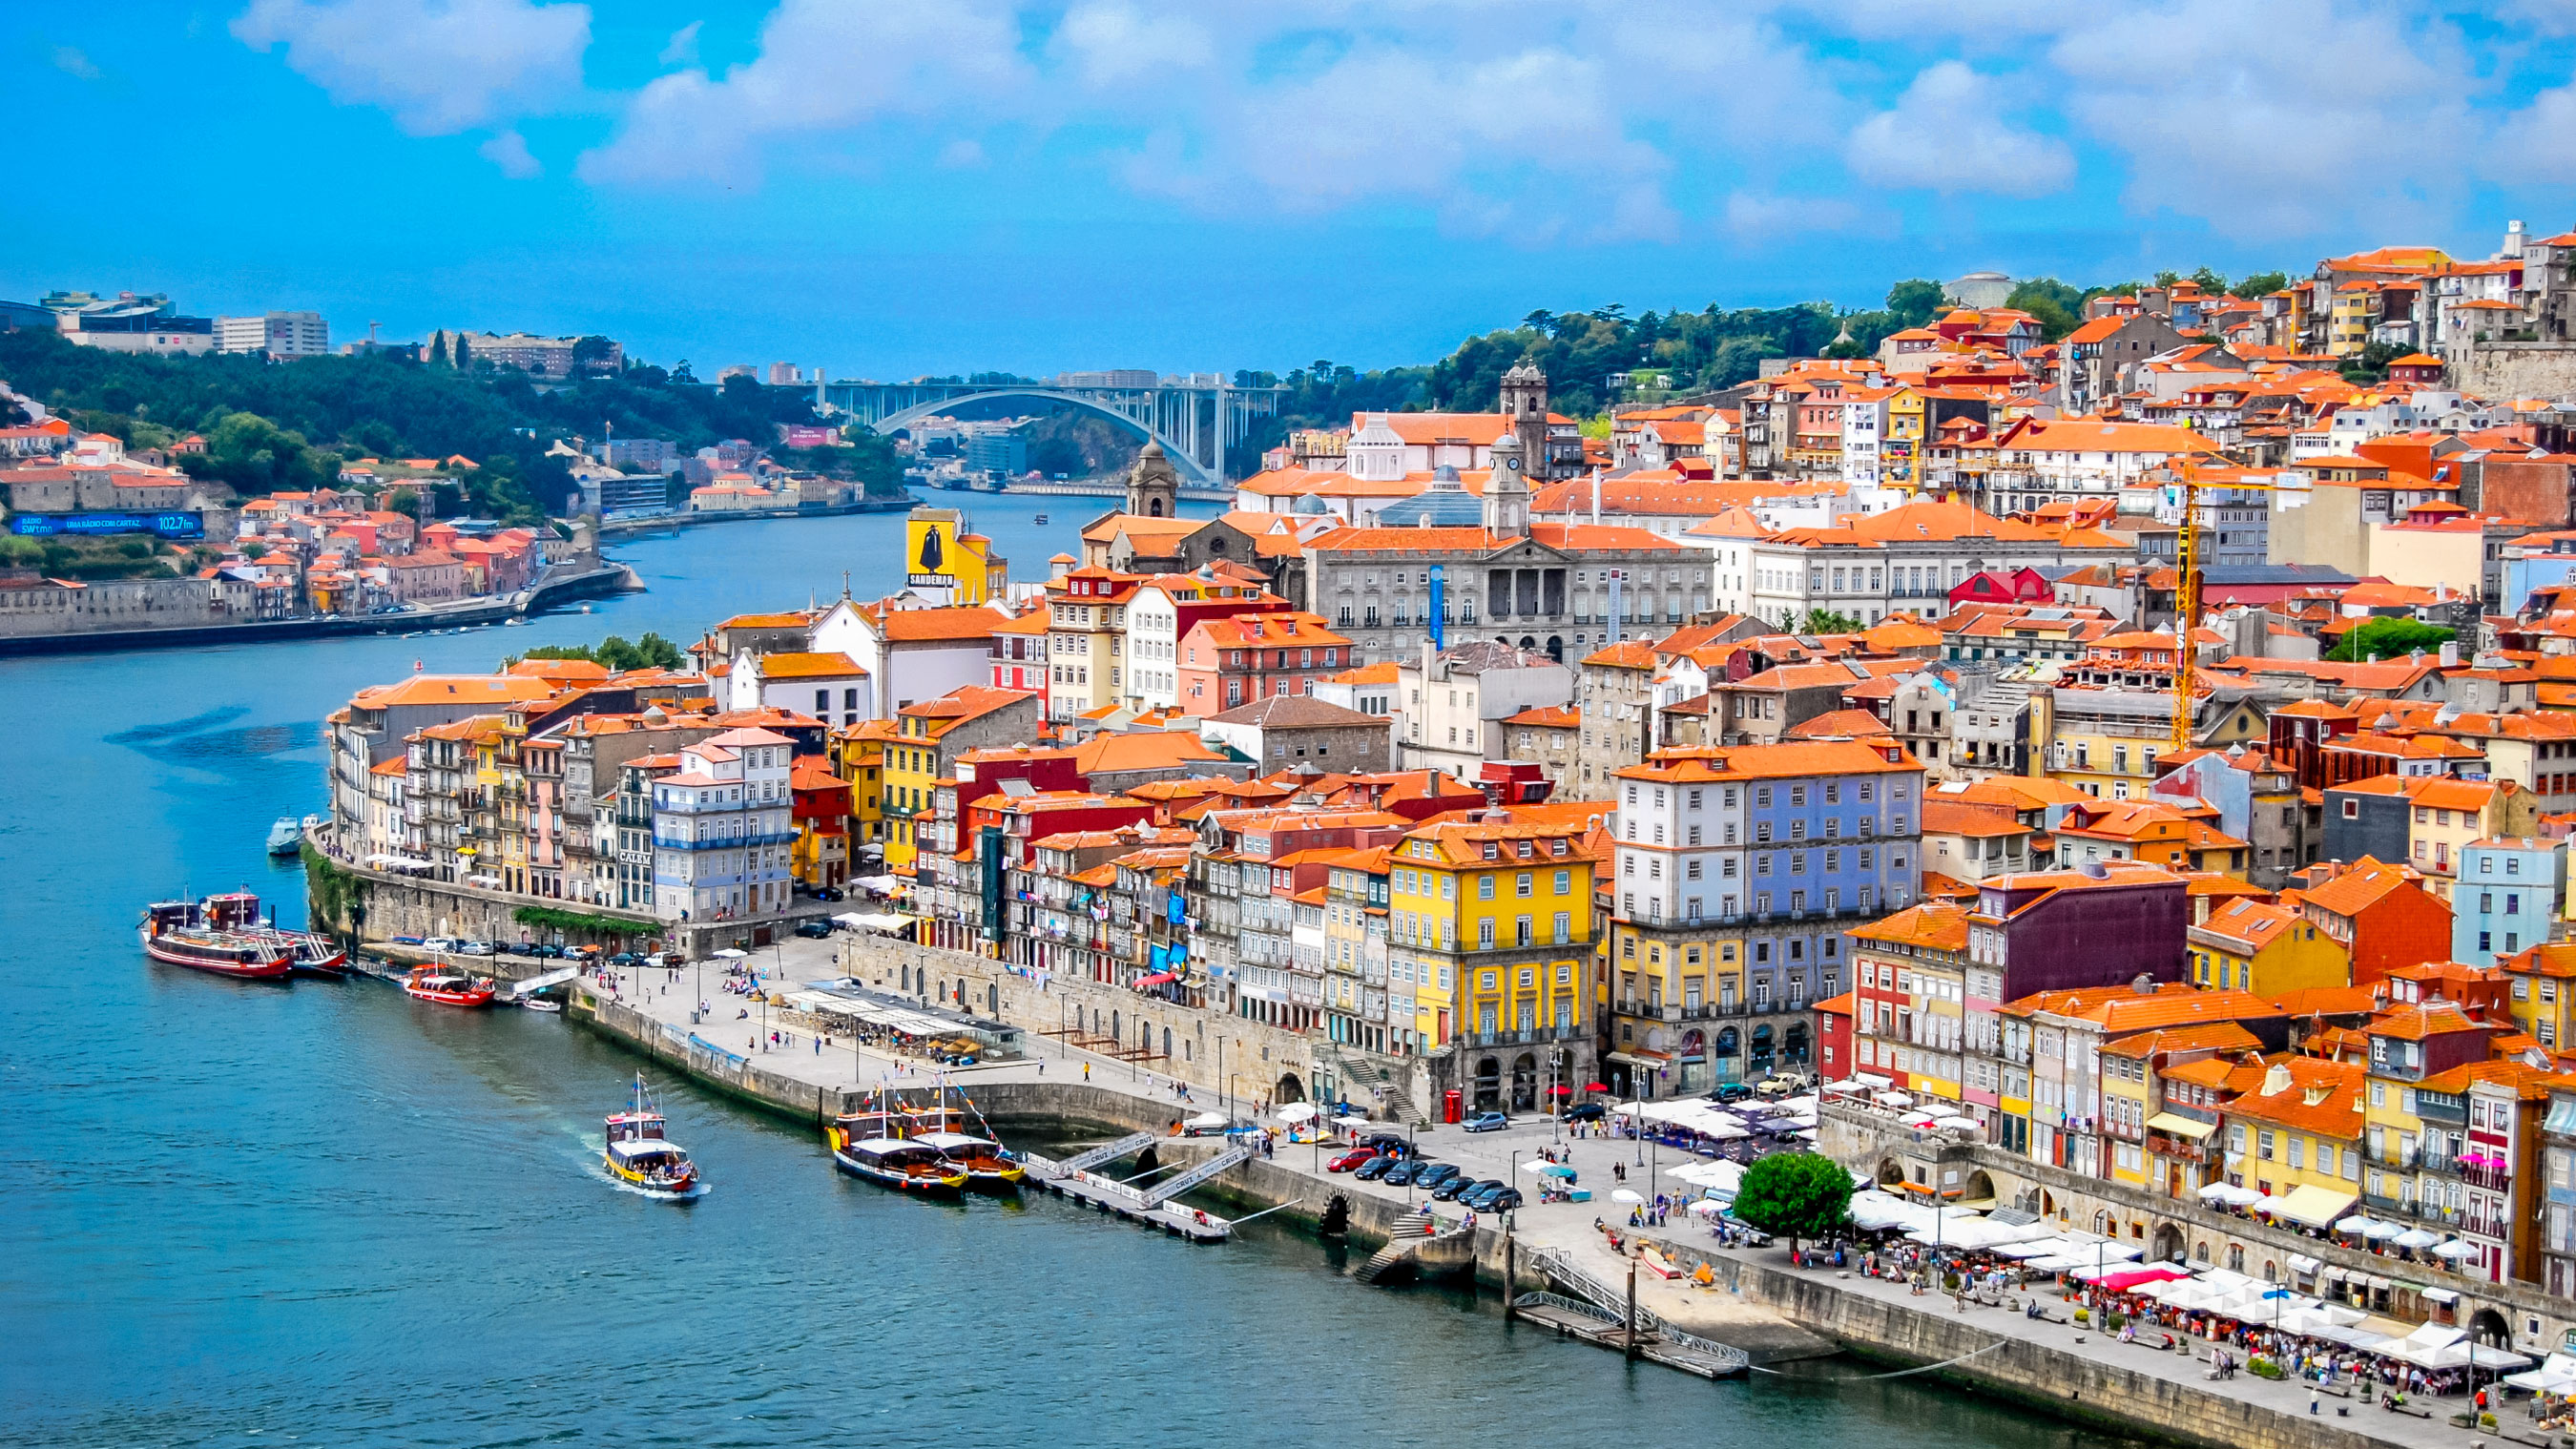 ТОП-23 мест, что посмотреть в Порту и куда сходить. Отзывы туристов 2019 * Португалия